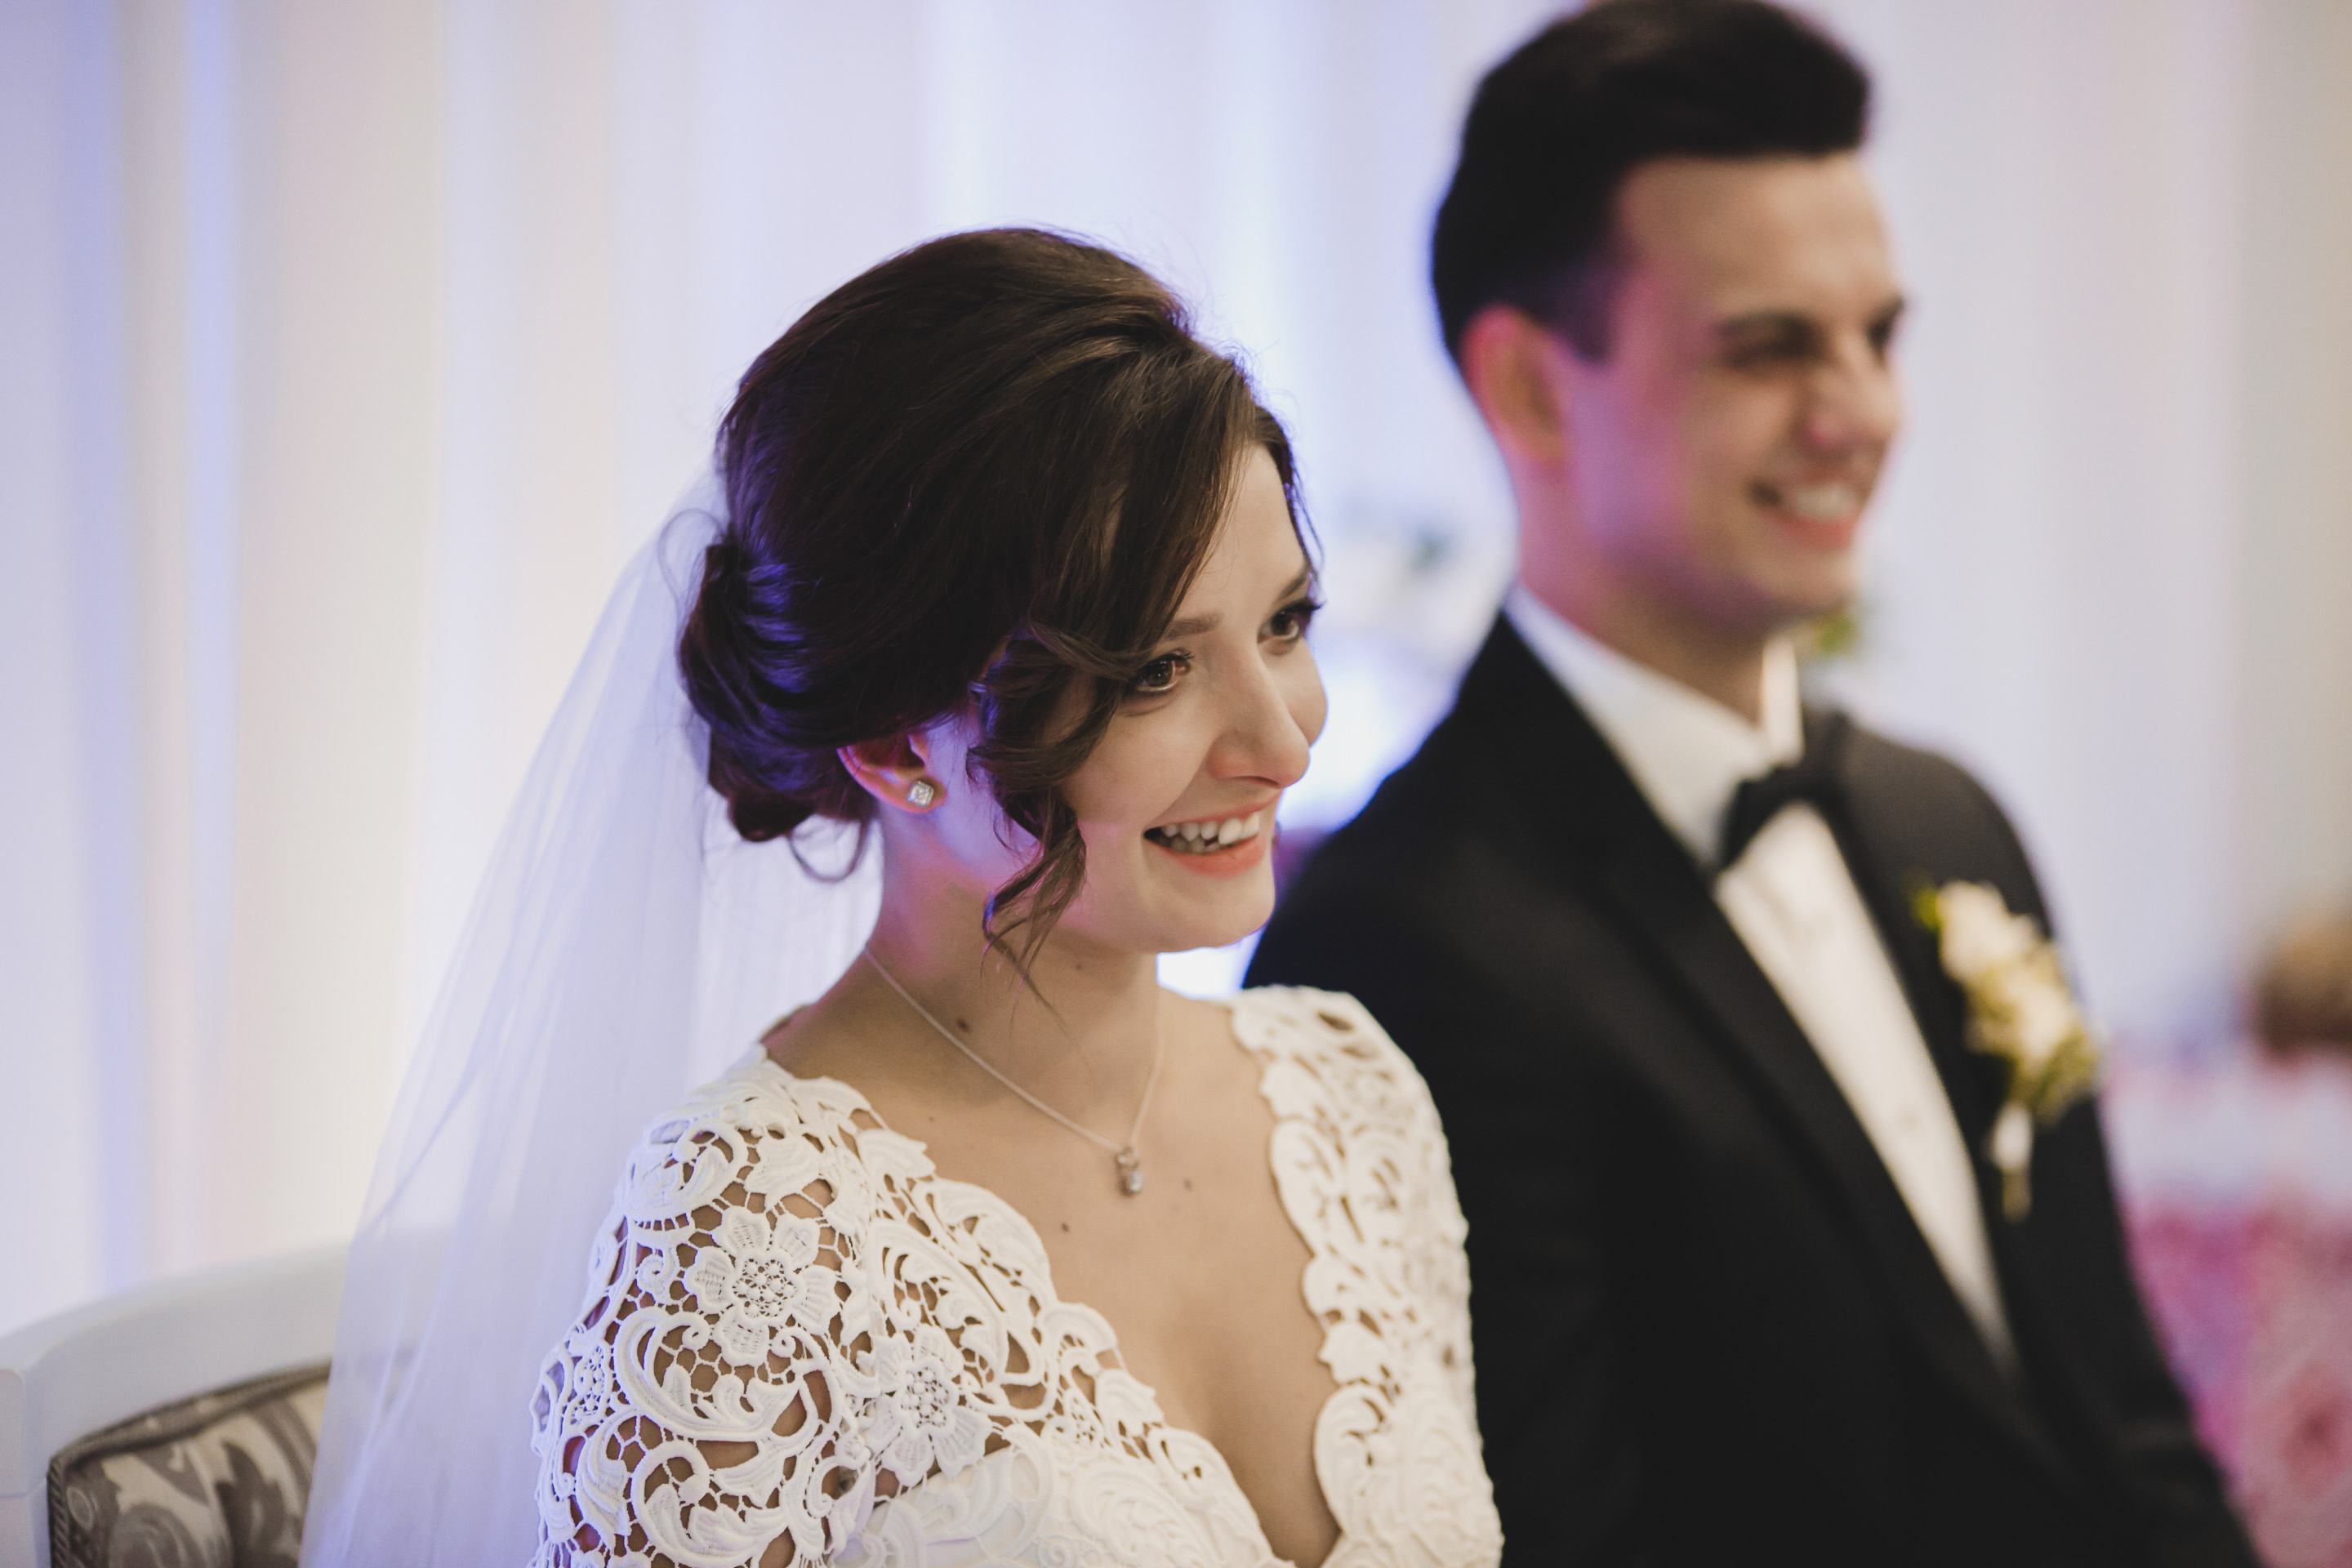 Una joven pareja sonriendo el día de su boda | Foto: Shutterstock